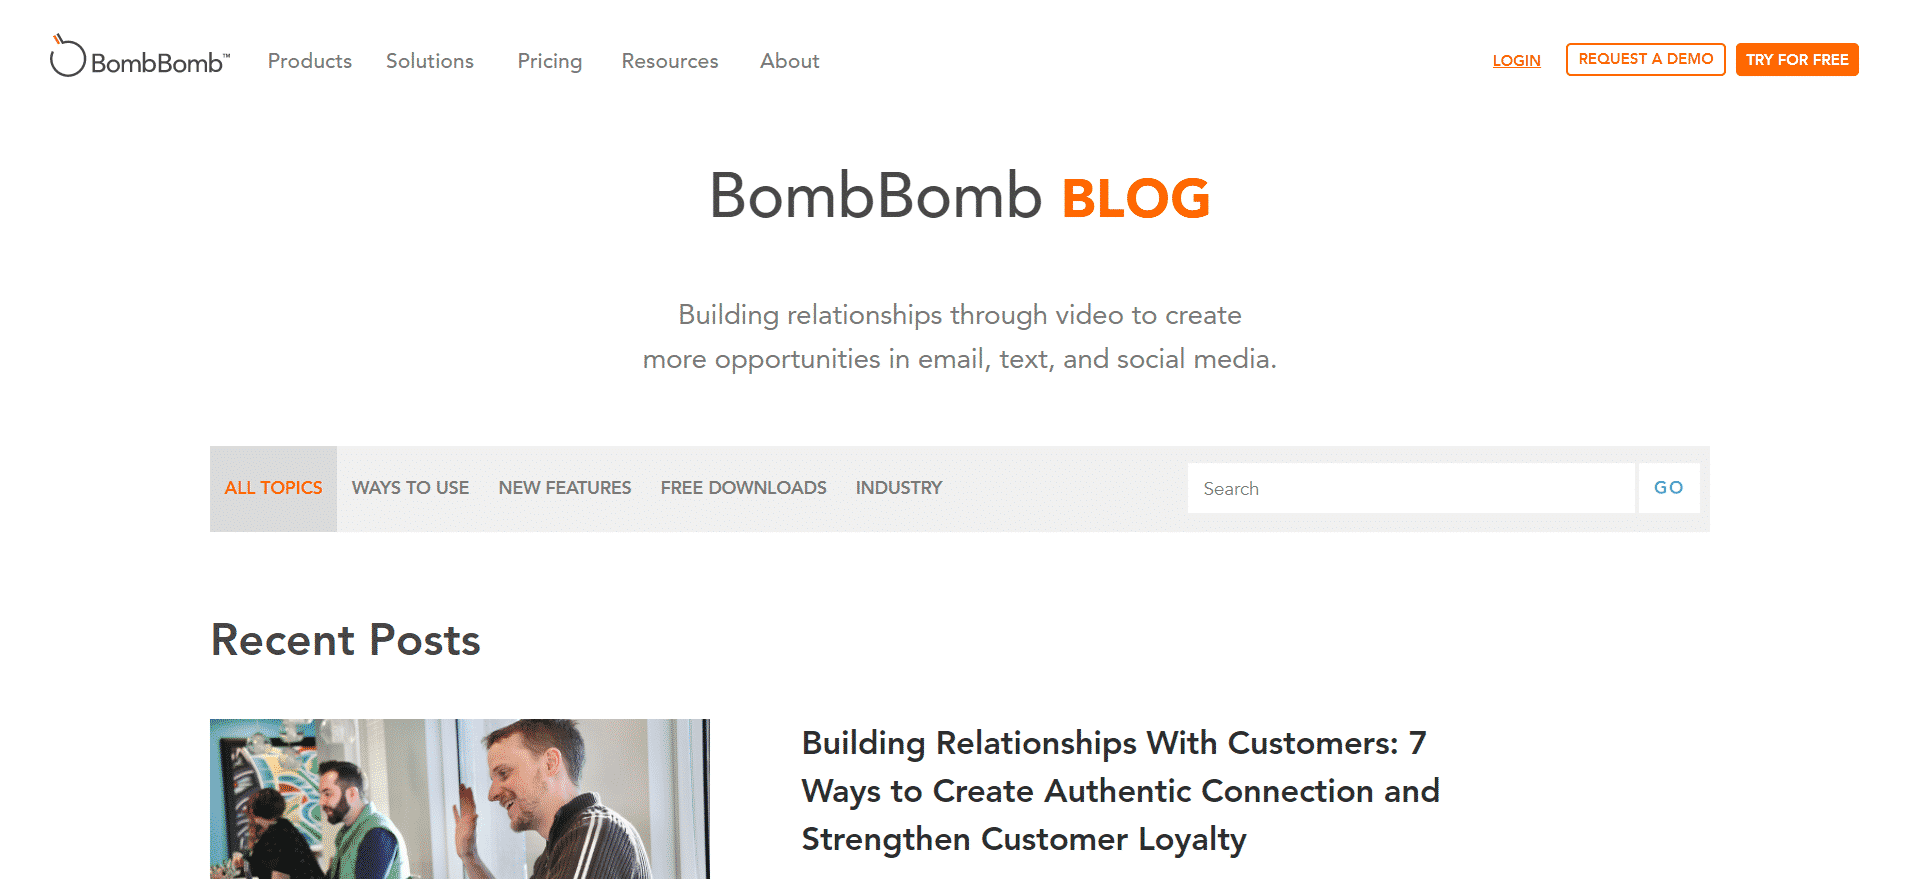 BombBomb Blog